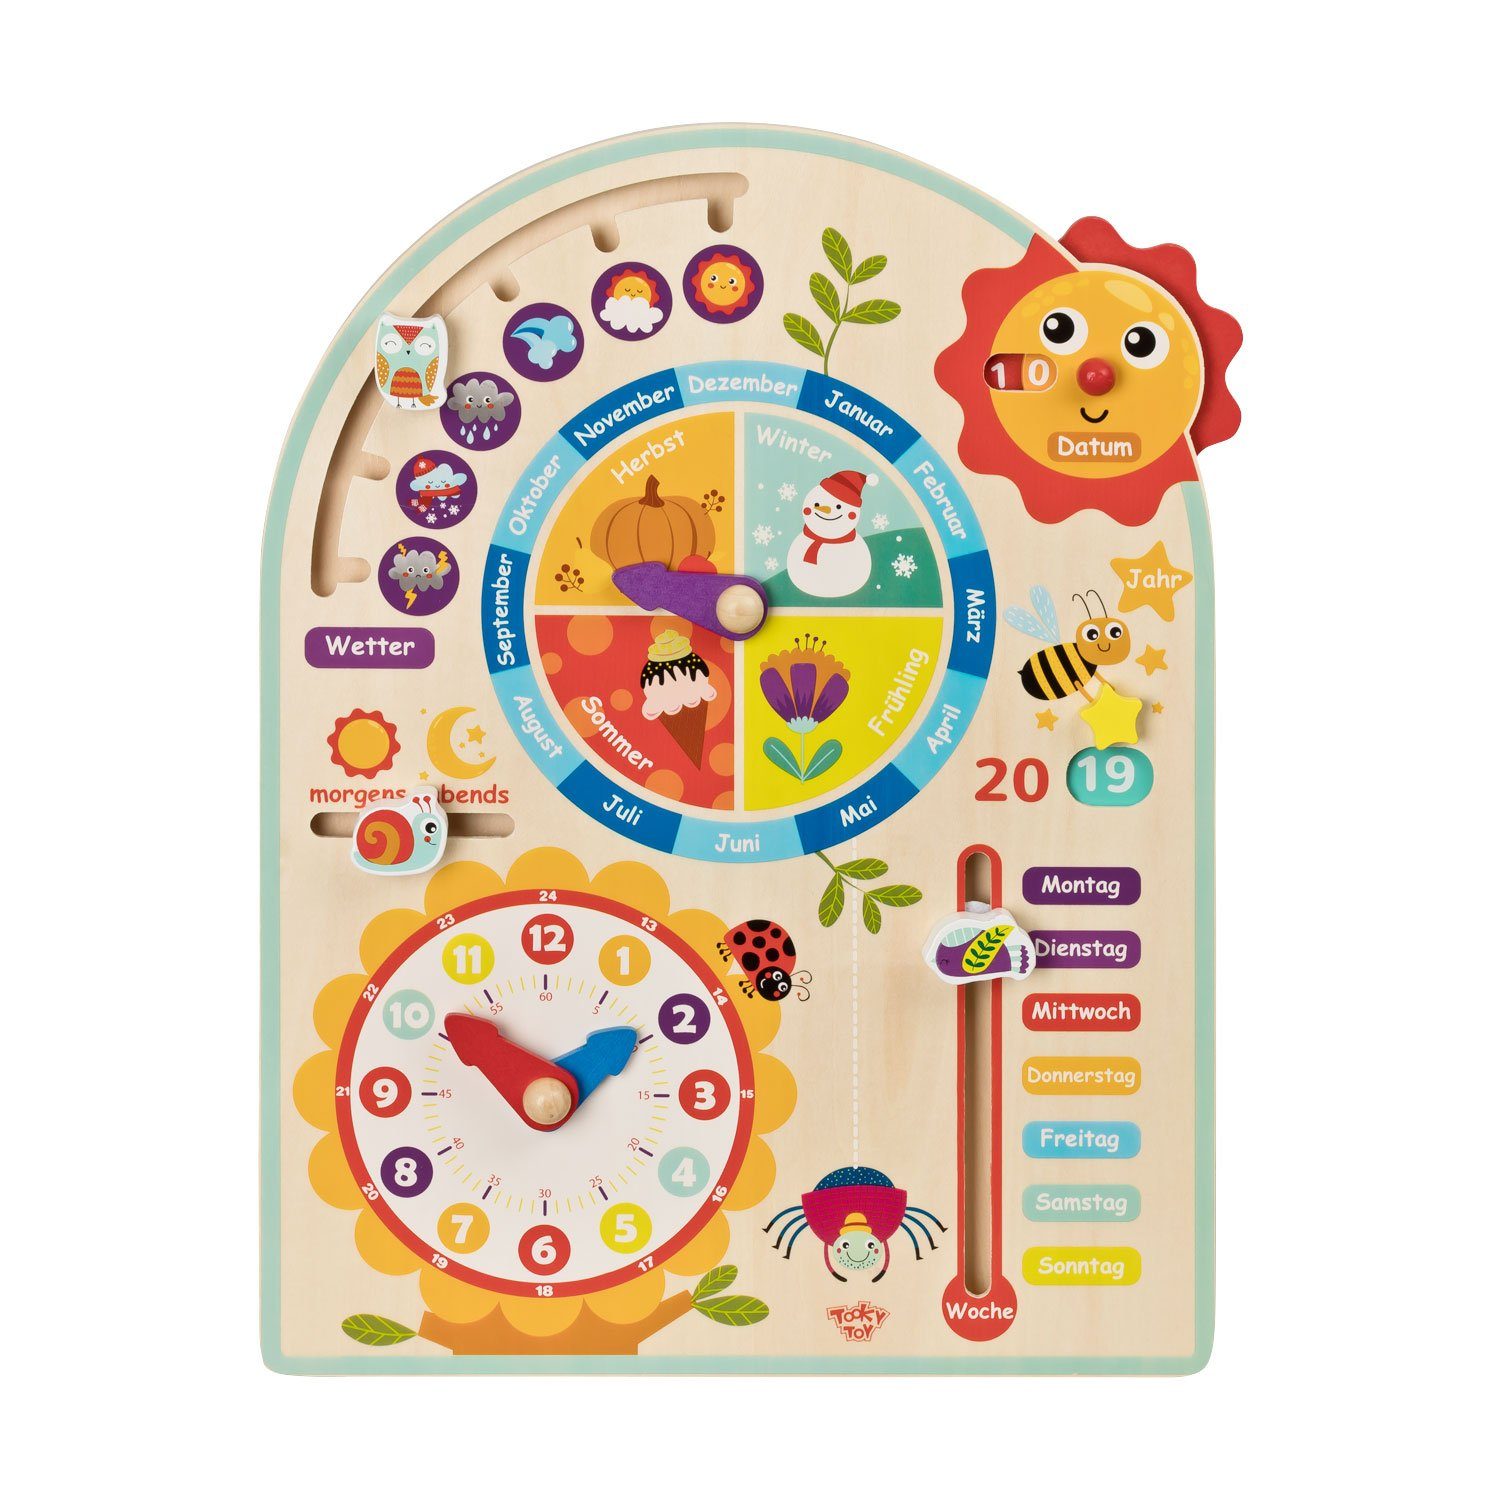 Puzzle Tooky Toy Kalenderuhr Jahresuhr - Kinder-Spielzeug Holz-Spielzeug Lern-Spielzeug, Пазлиteile